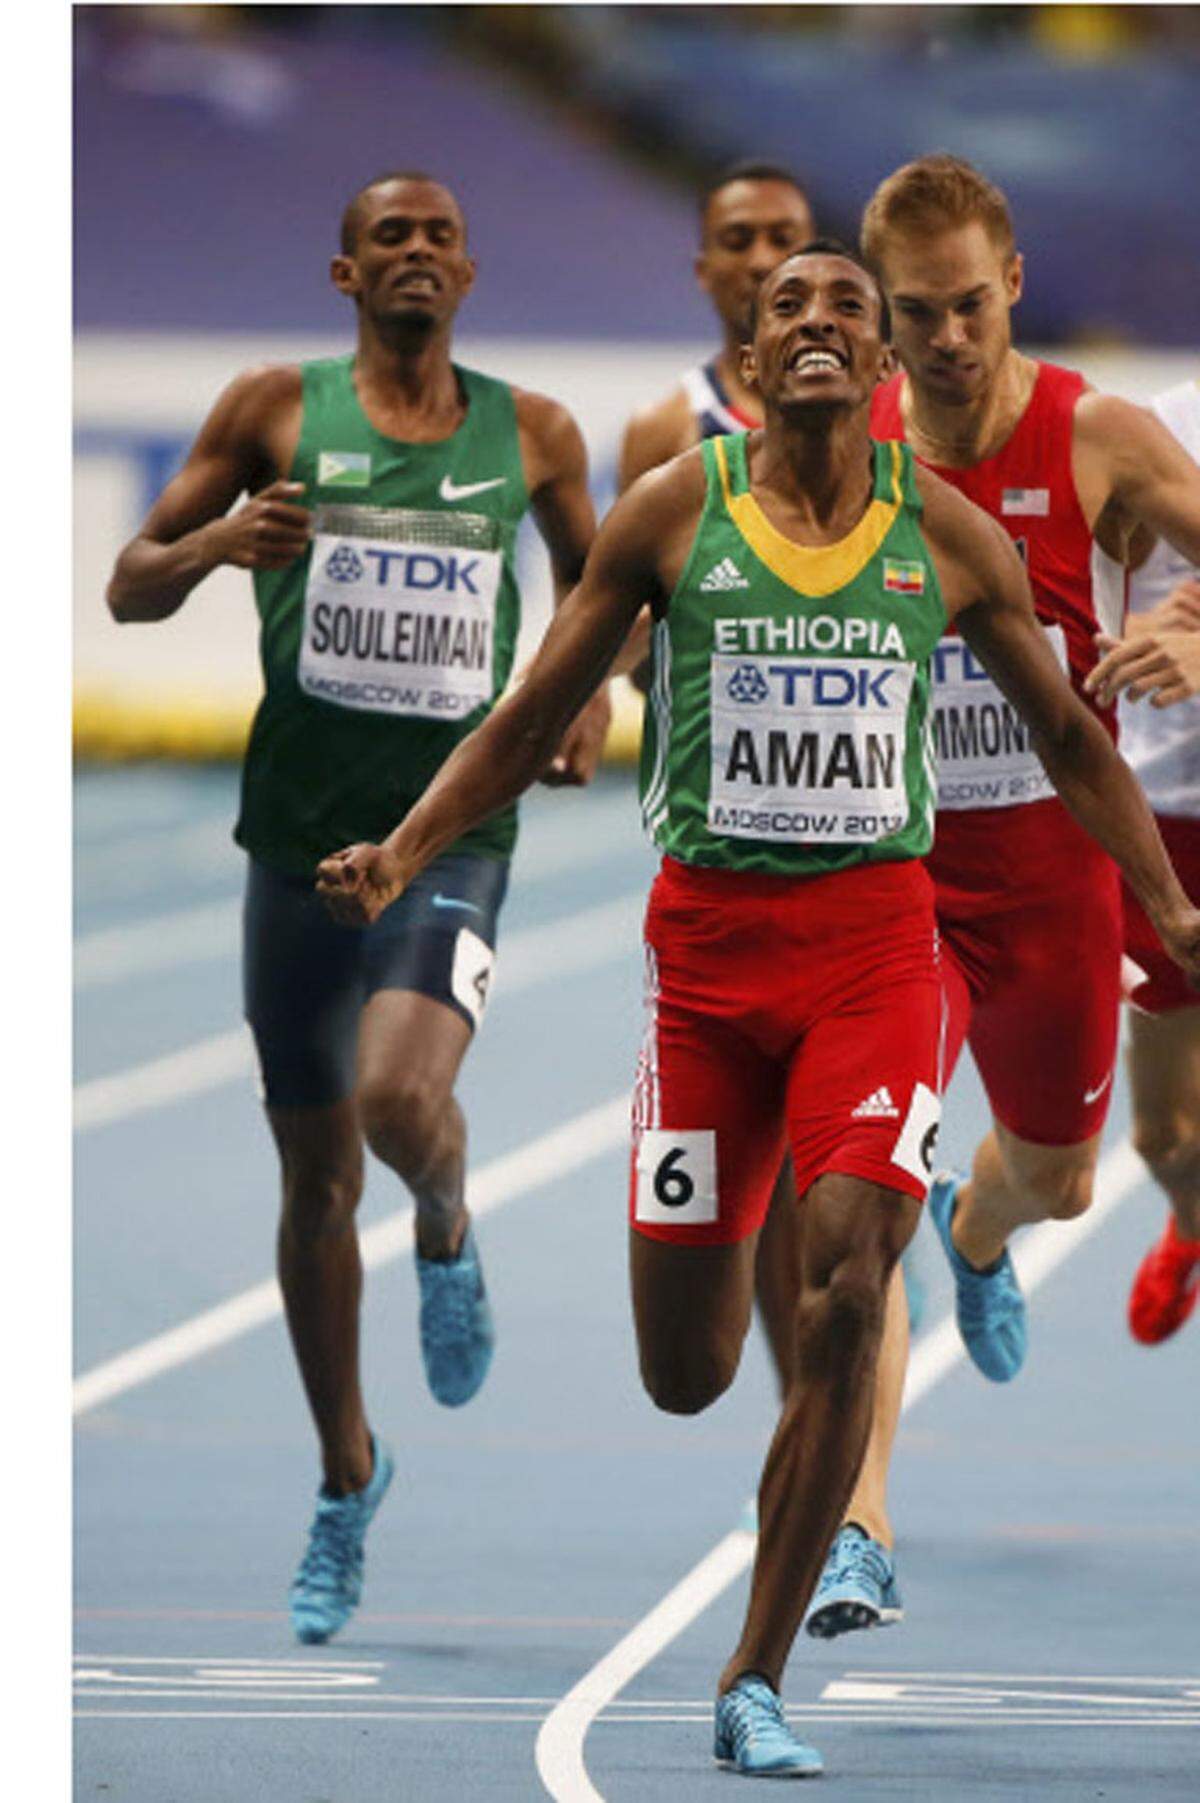 Mohammed Aman aus Äthiopien gewinnt in Abwesenheit von Weltrekordler David Rudisha die 800 Meter. Er setzt sich in 1:43,31 Minuten gegen den US-Amerikaner Nick Symmonds und Ayenleh Souleiman aus Dschibuti durch.  Zu einer rein afrikanischen Angelegenheit gerät das Finale über 3000 Meter Hindernis der Frauen. Milcah Chemos Cheywa aus Kenia siegt in der Jahresweltbestleistung von 9:11,65 Minuten in spannenden Rennen vor ihrer Landsfrau Lidya Chepkurui. Für Sofia Assefa aus Äthiopien bleibt Bronze.